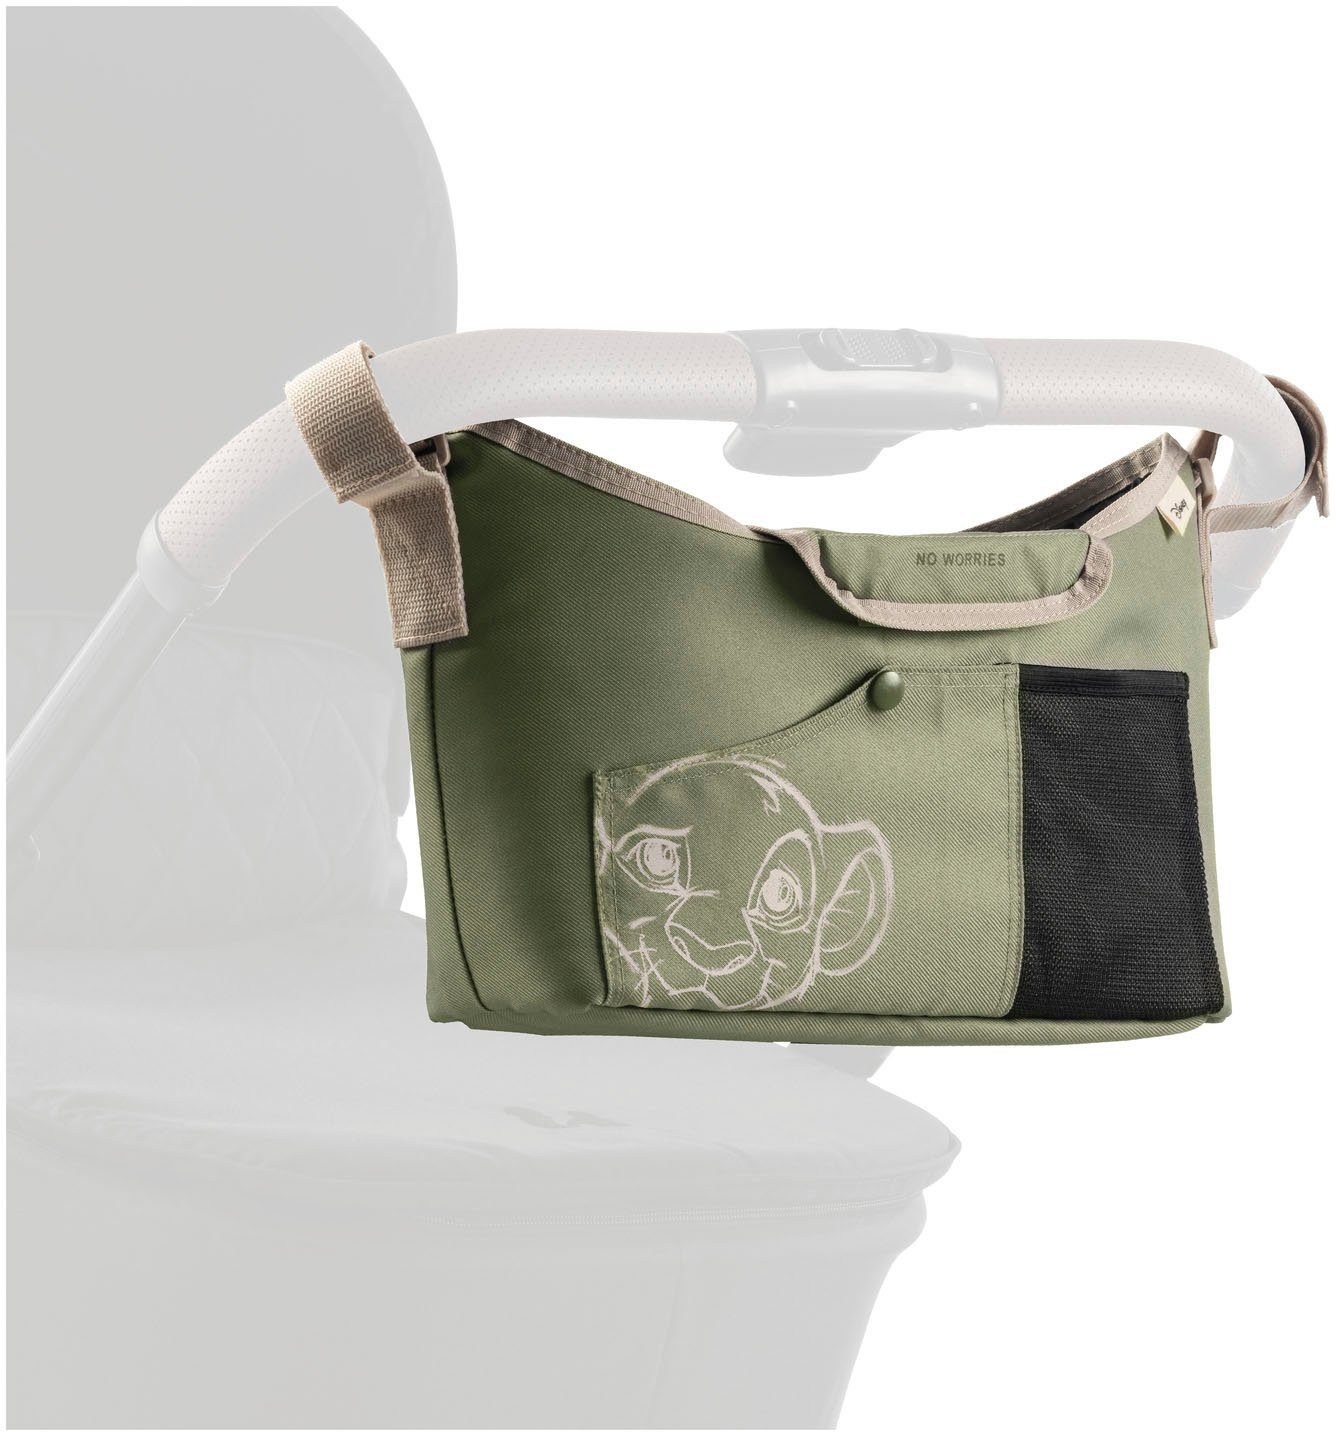 Hauck Kinderwagen-Tasche Pushchair Bag, Simba Olive